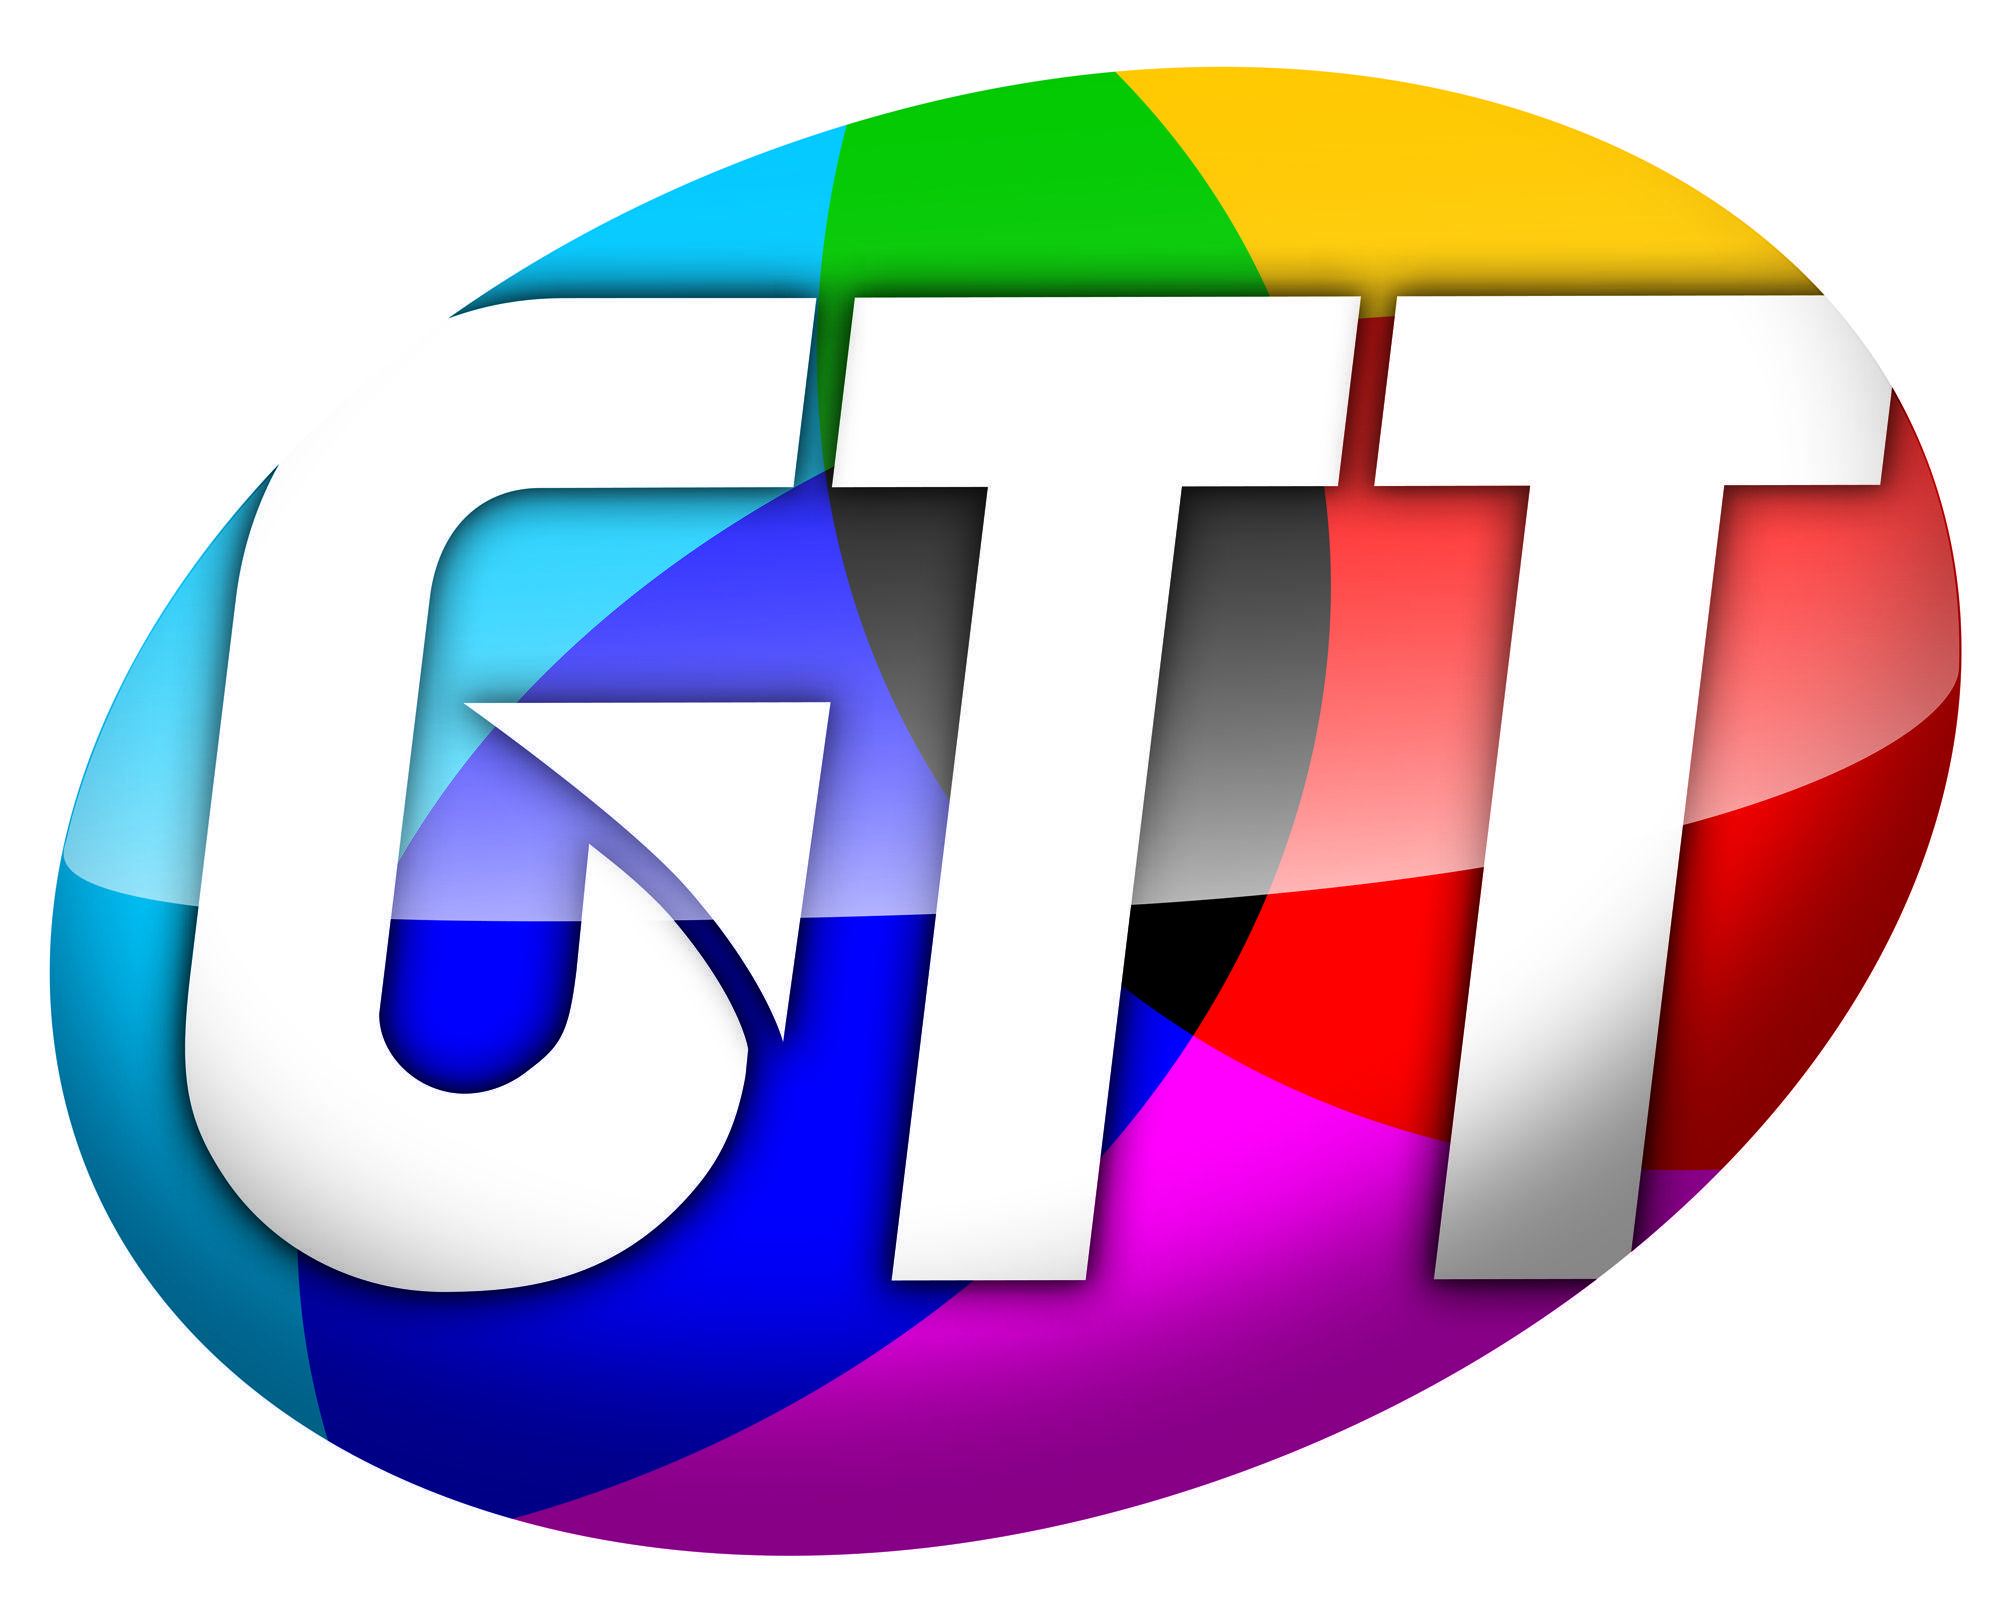 Gtt Logo - What is GTT Laser Engraved Anilox Roll - Apex International